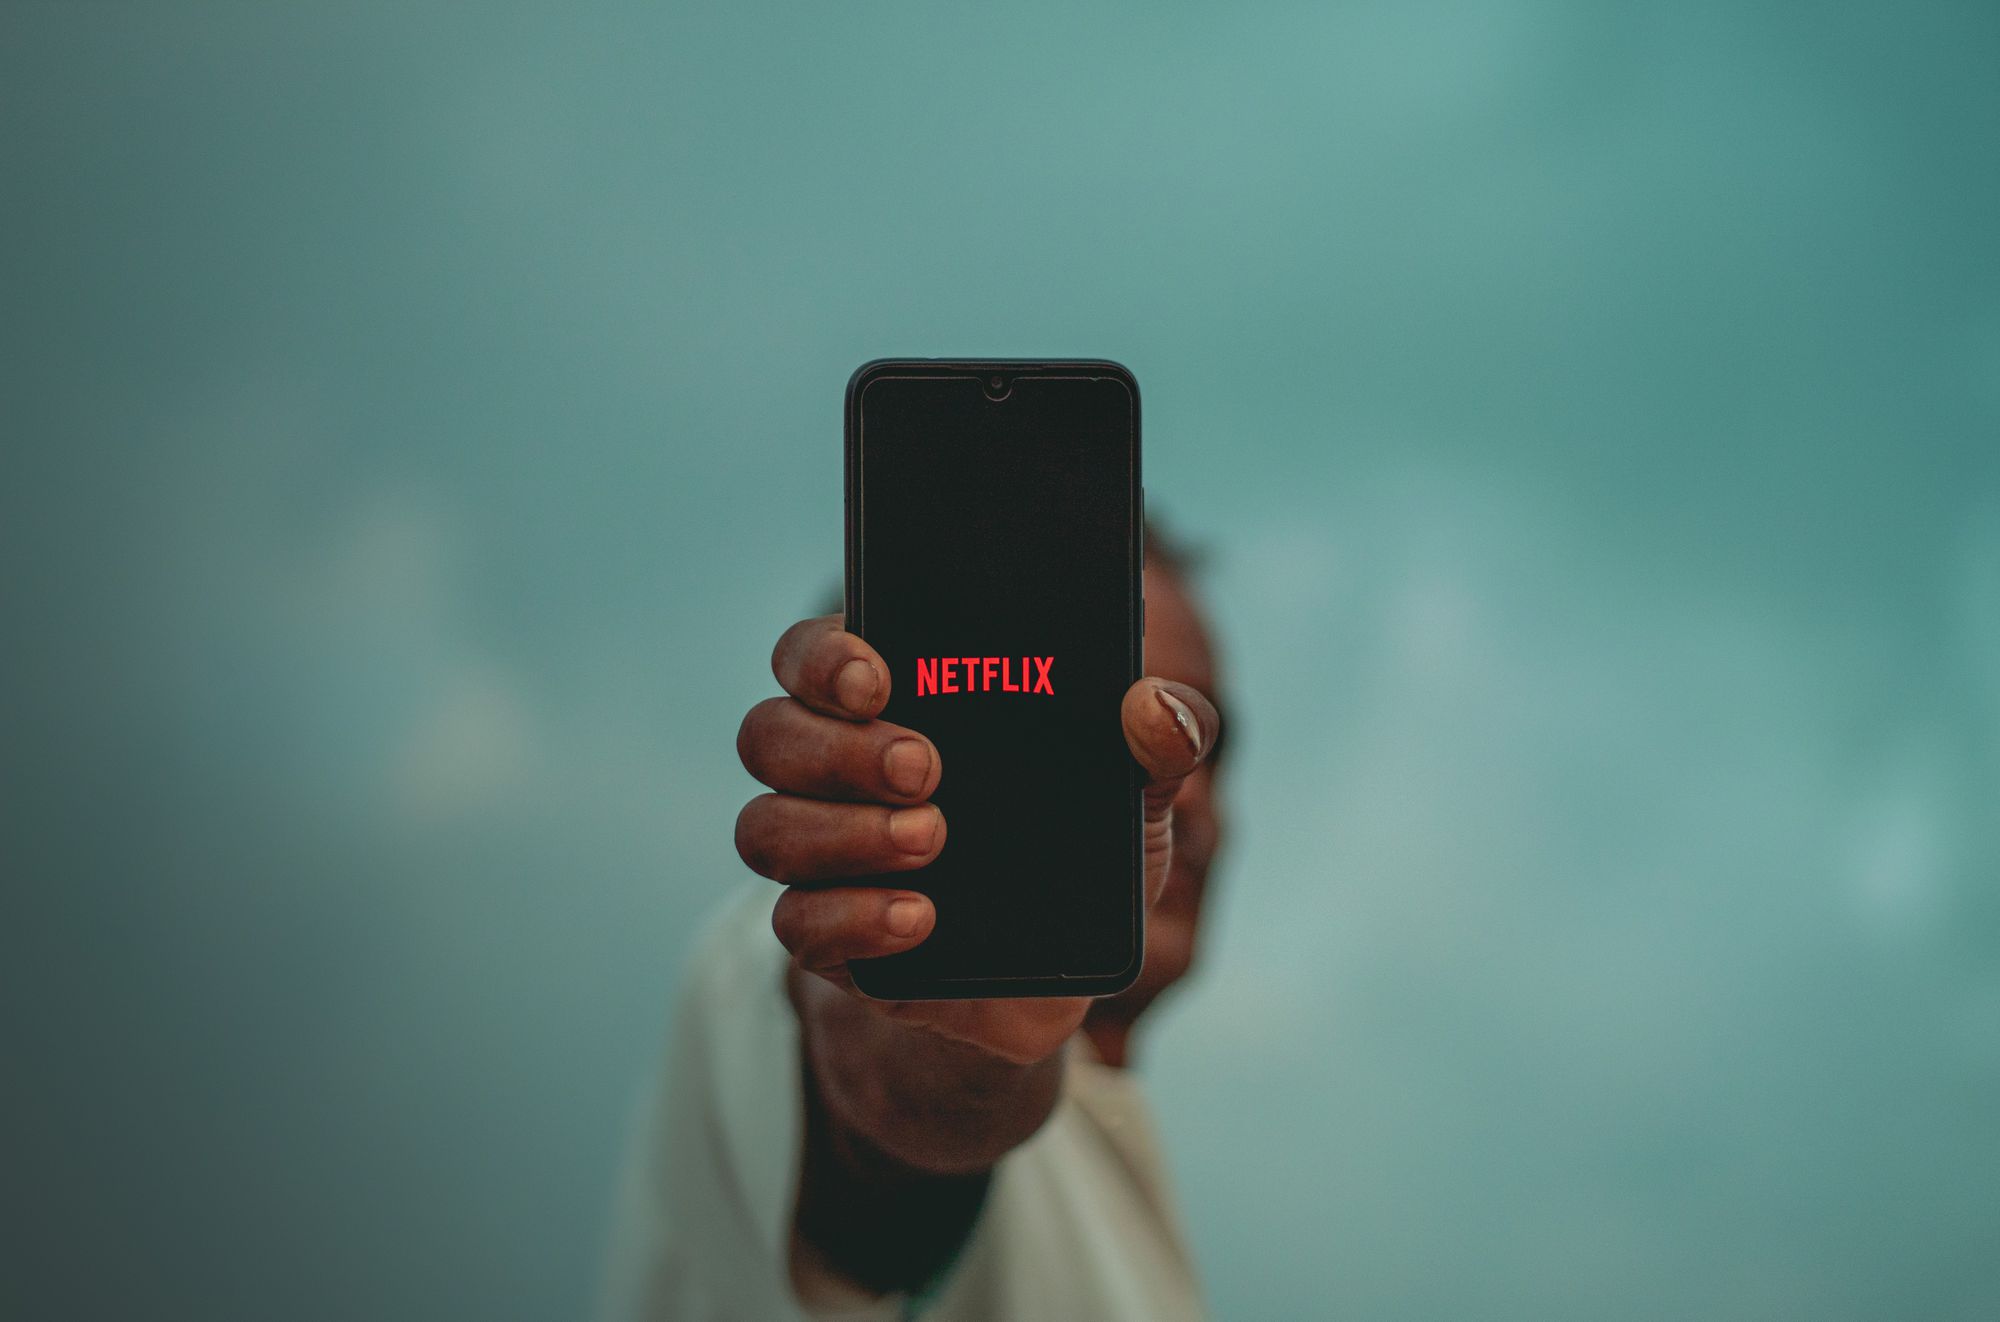 Een persoon die een zwarte iPhone op armlengte houdt met het Netflix-logo op het scherm. 